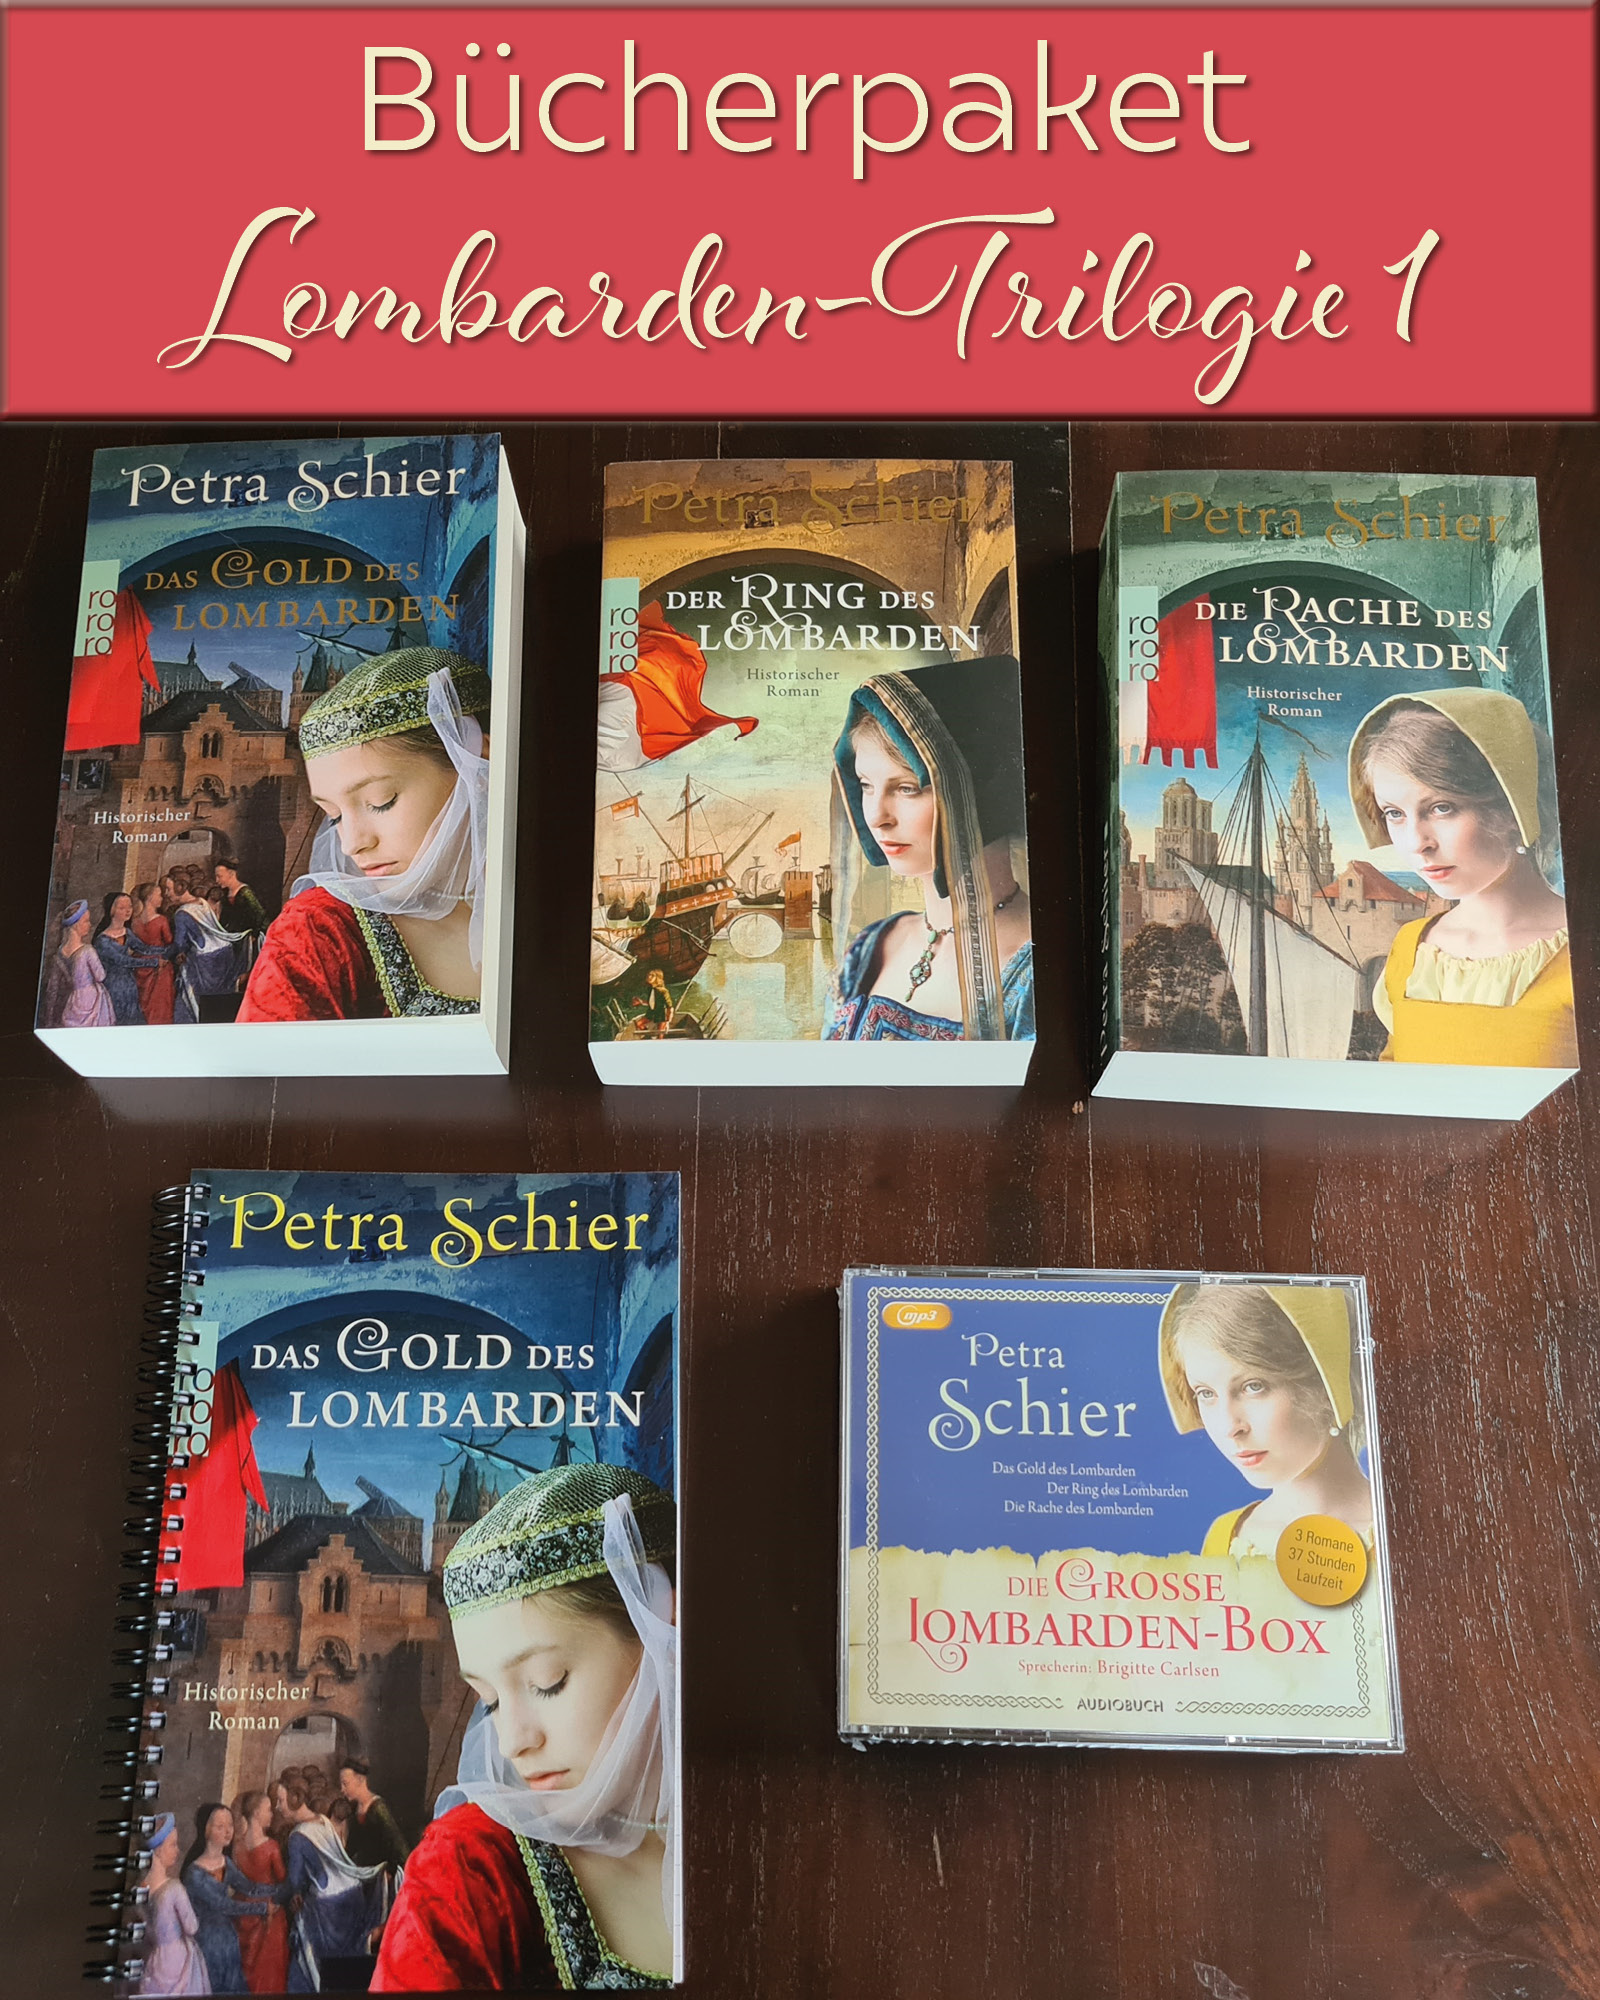 6., 7. und 8. Bücherversteigerung: Kreuz-Trilogie, Lombarden-Trilogie, Rheinbach-Hörbücher